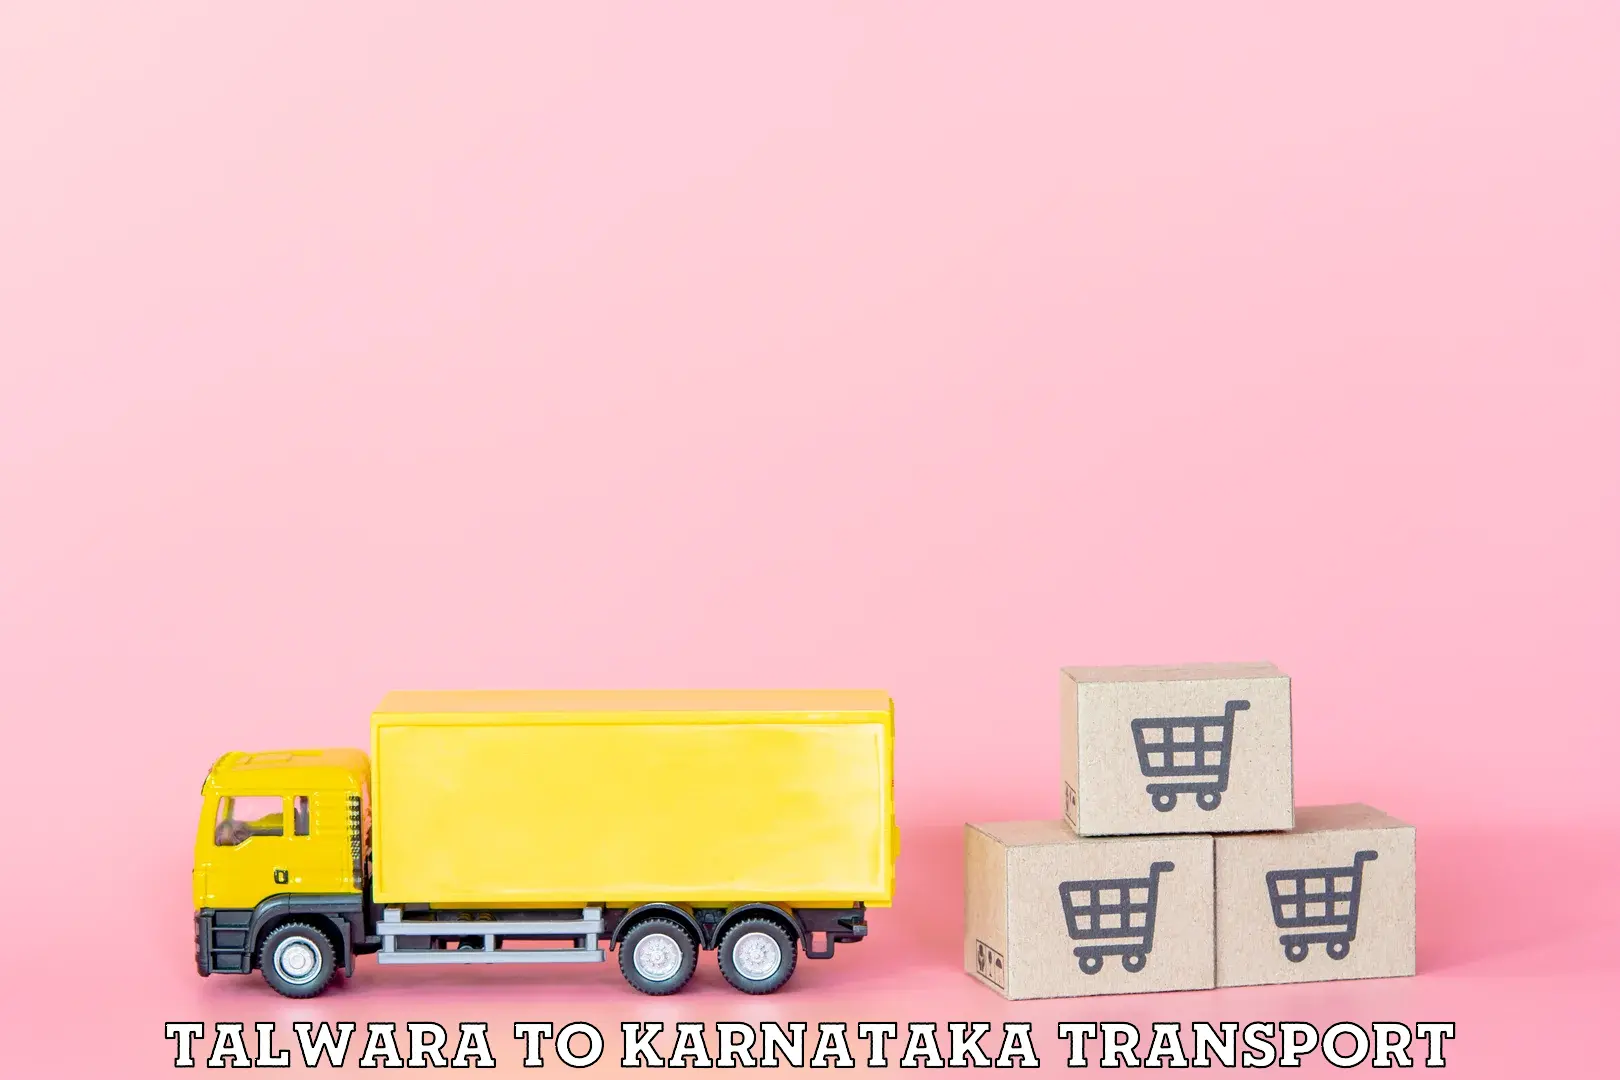 Land transport services Talwara to Karnataka